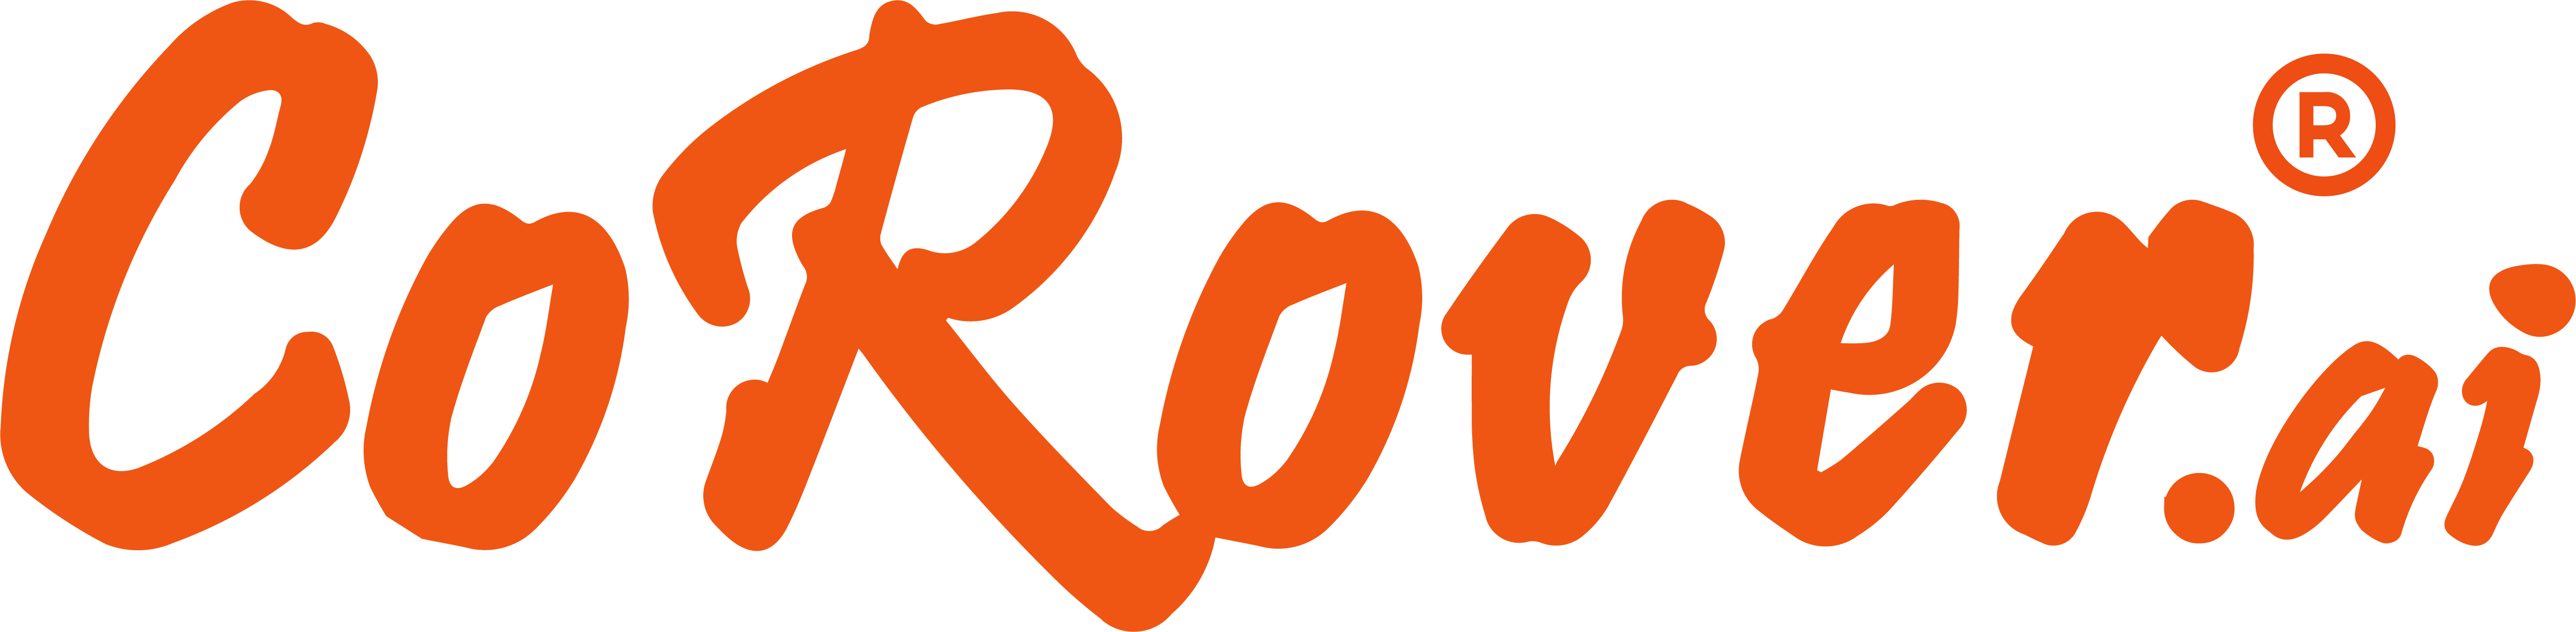 Logotipo de CoRover